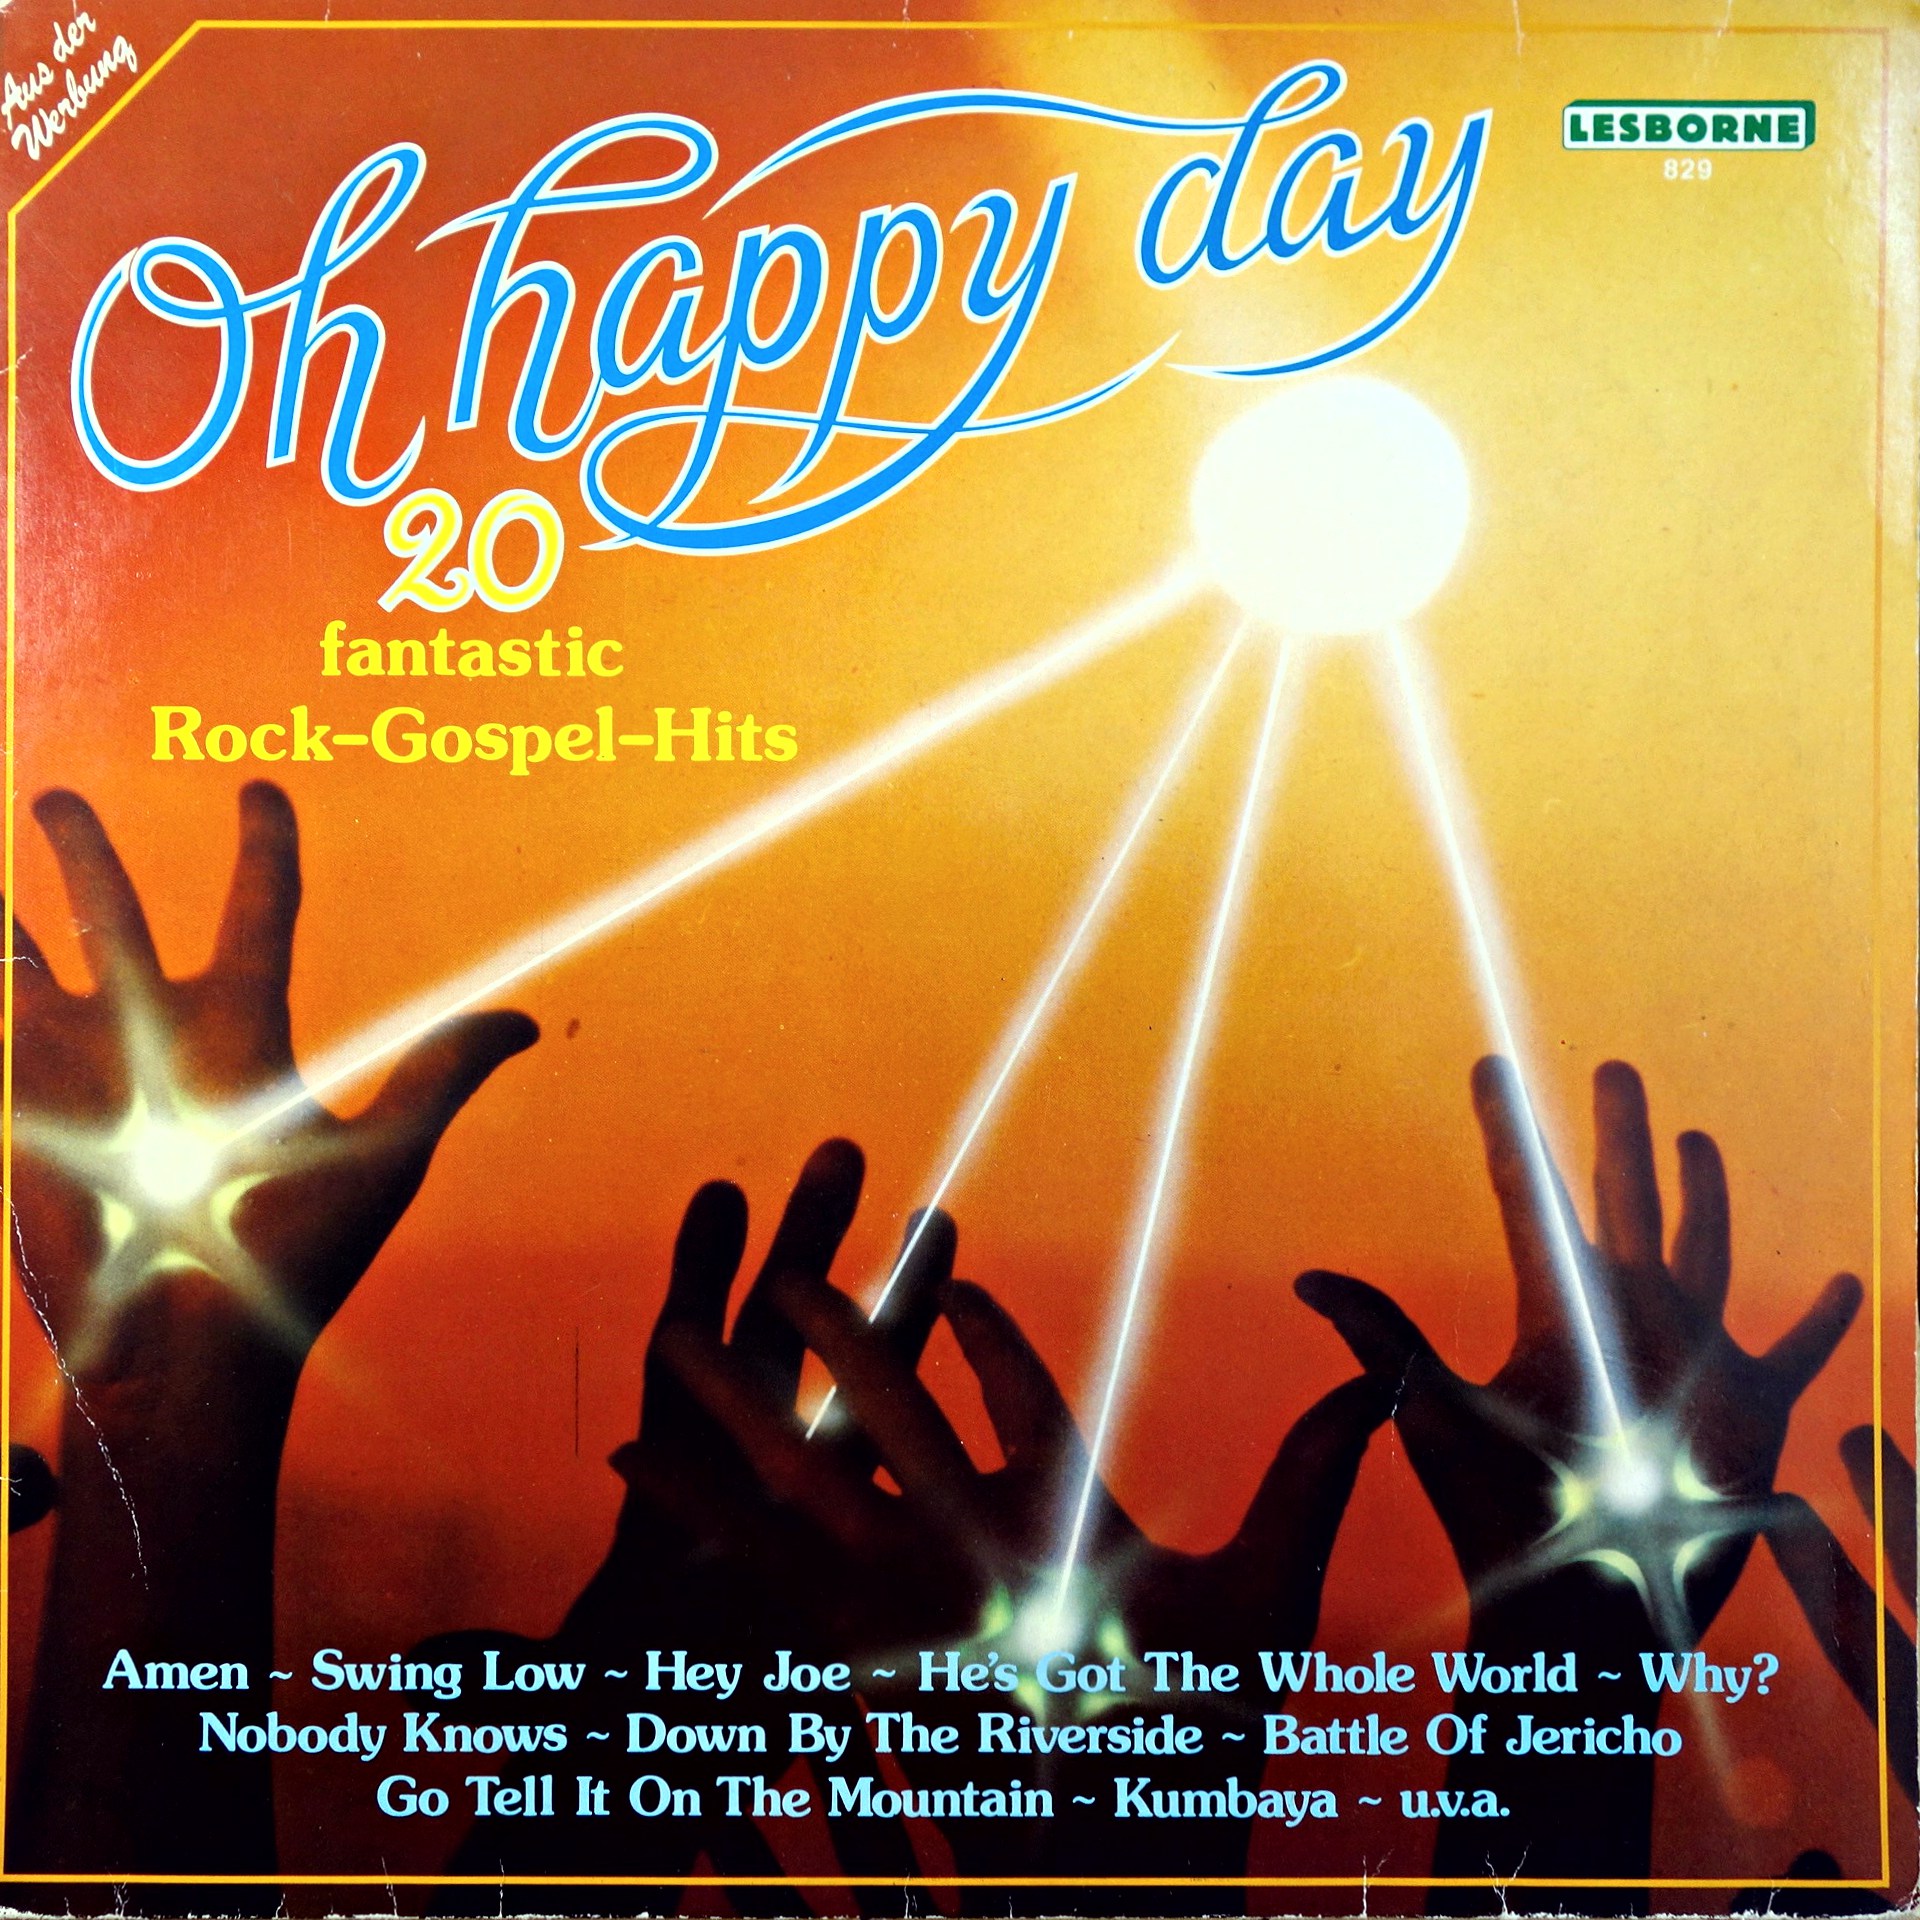 LP Lee Brown Singers ‎– Oh Happy Day - 20 Fantastic Rock-Gospel-Hits